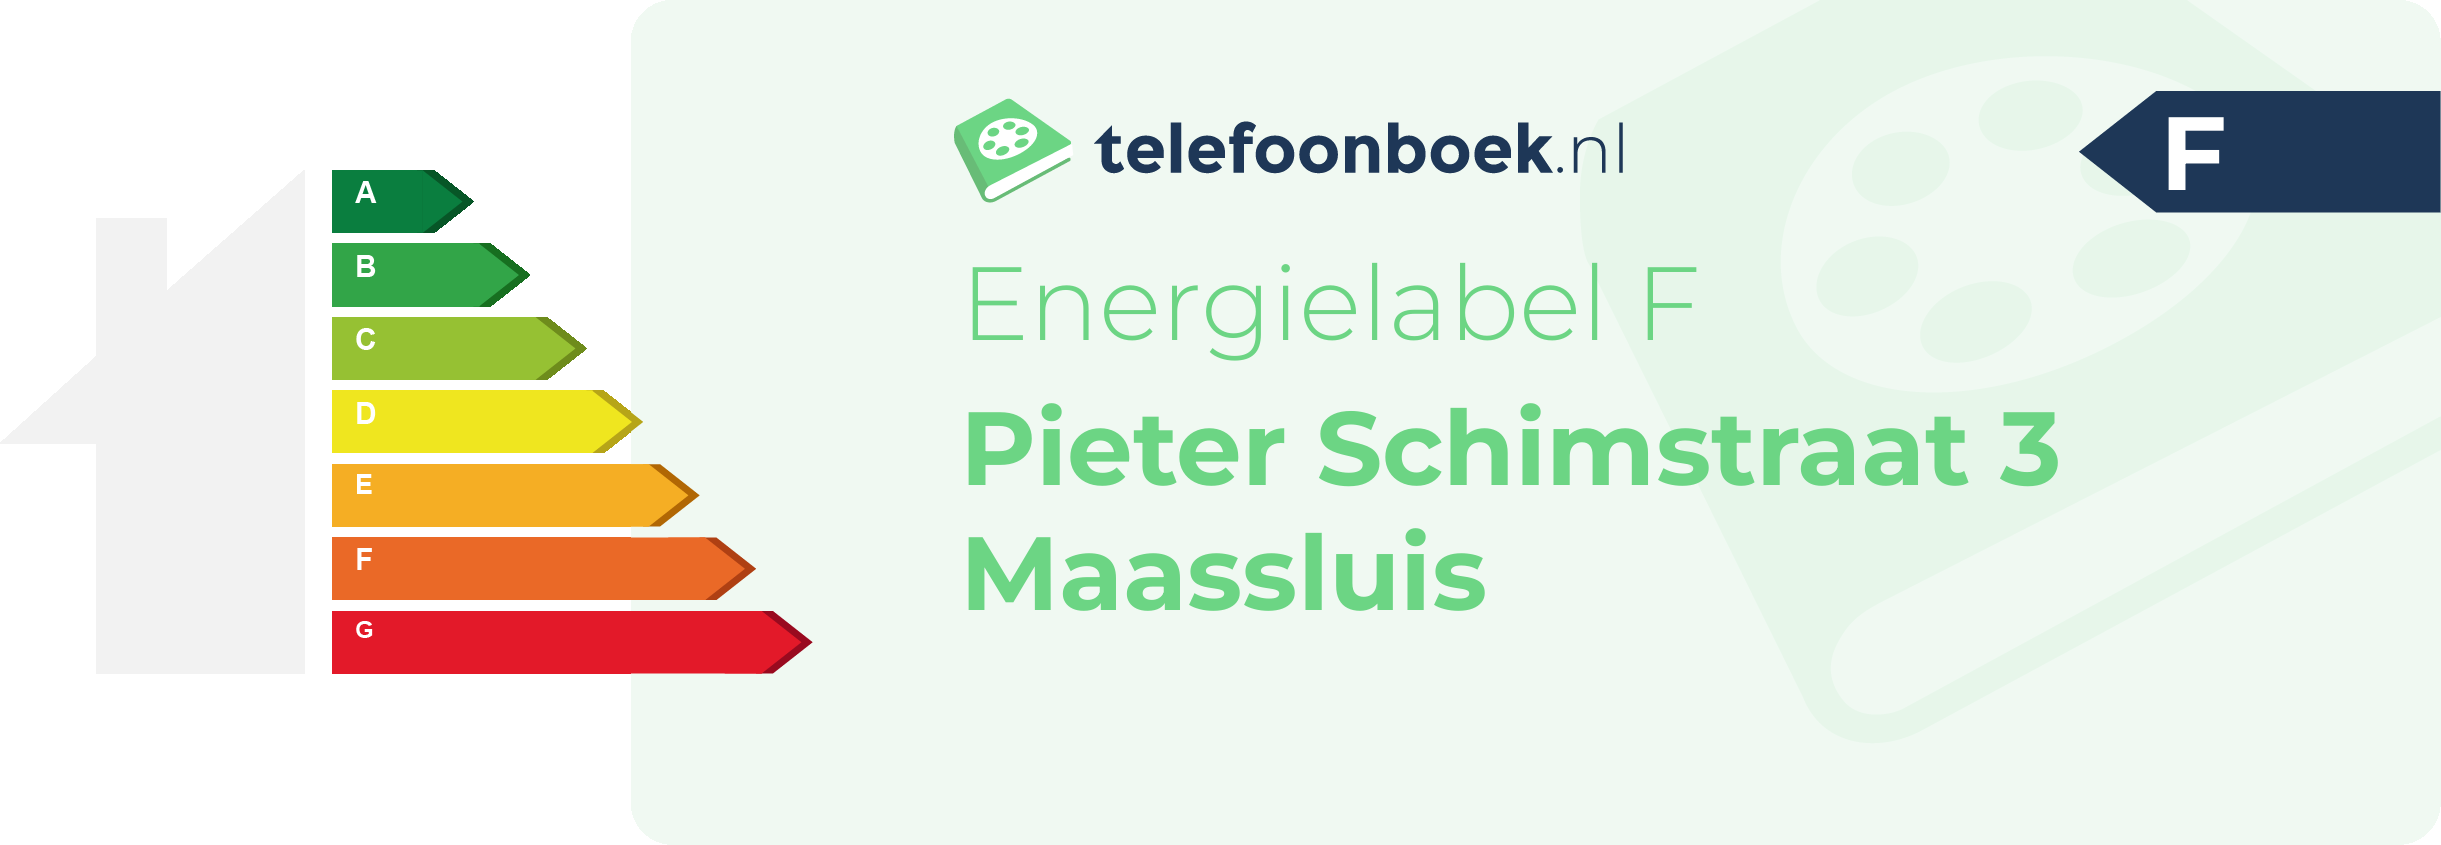 Energielabel Pieter Schimstraat 3 Maassluis